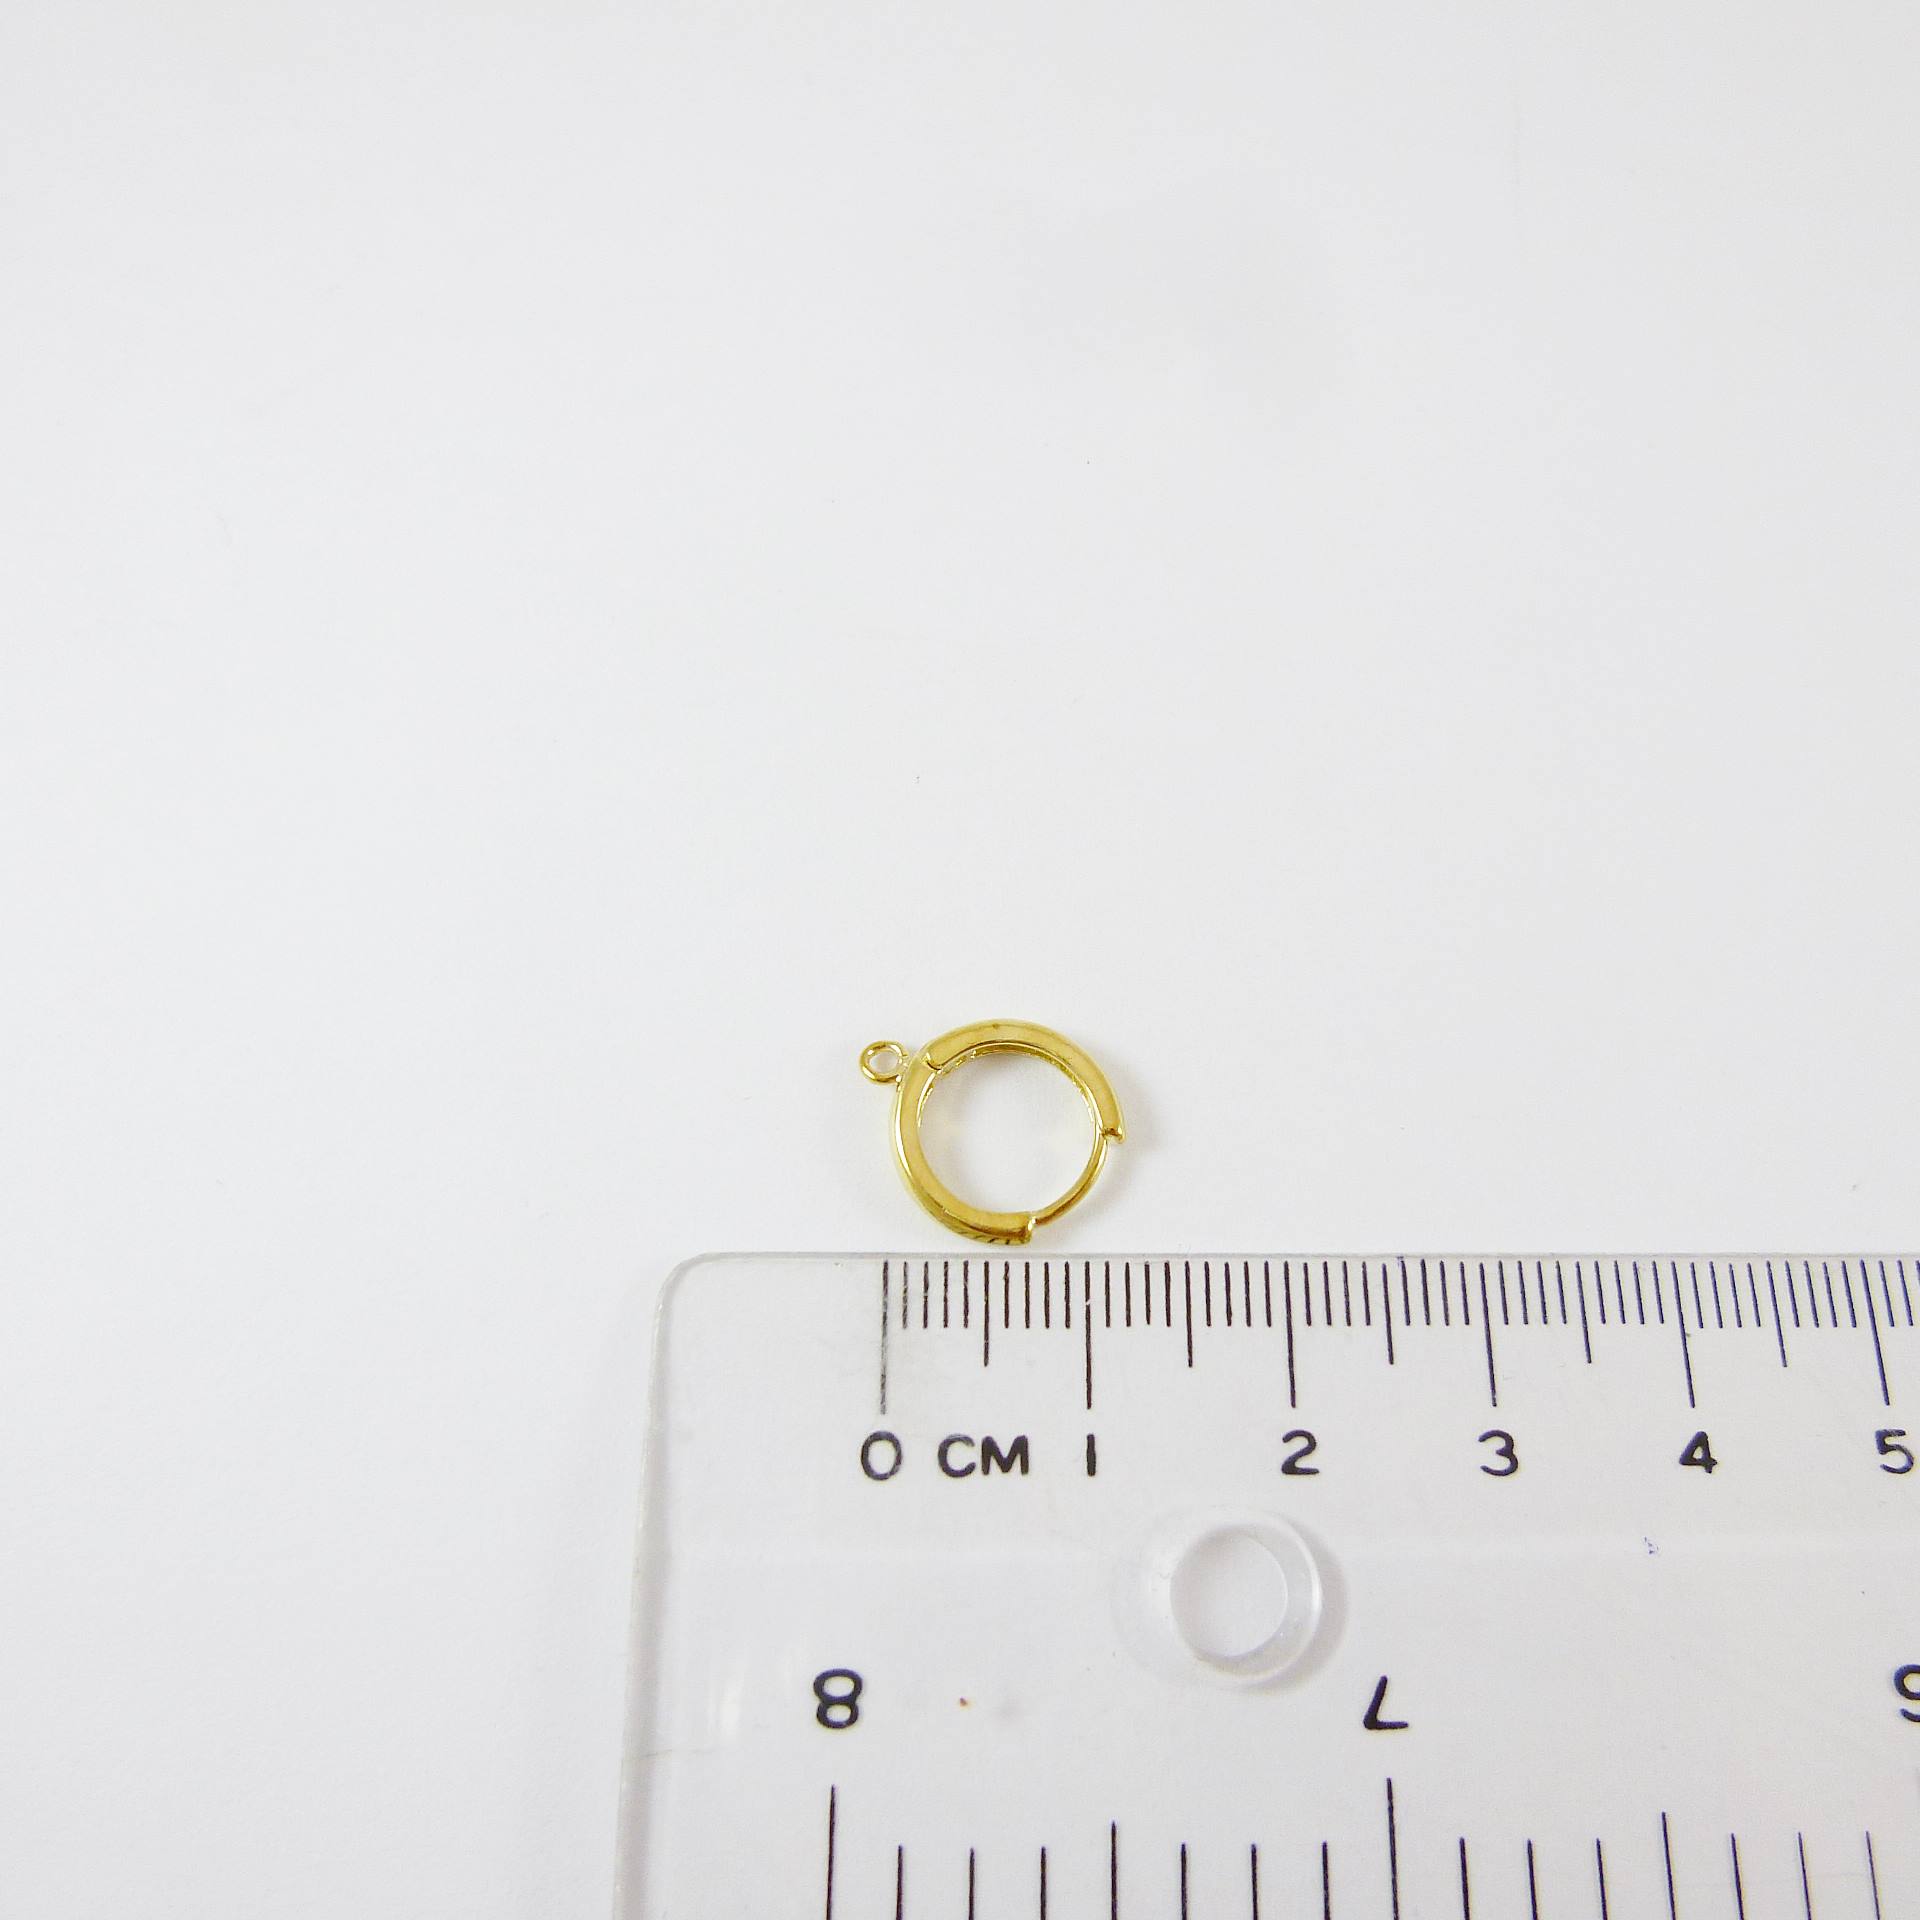 銅鍍金色圓形耳環